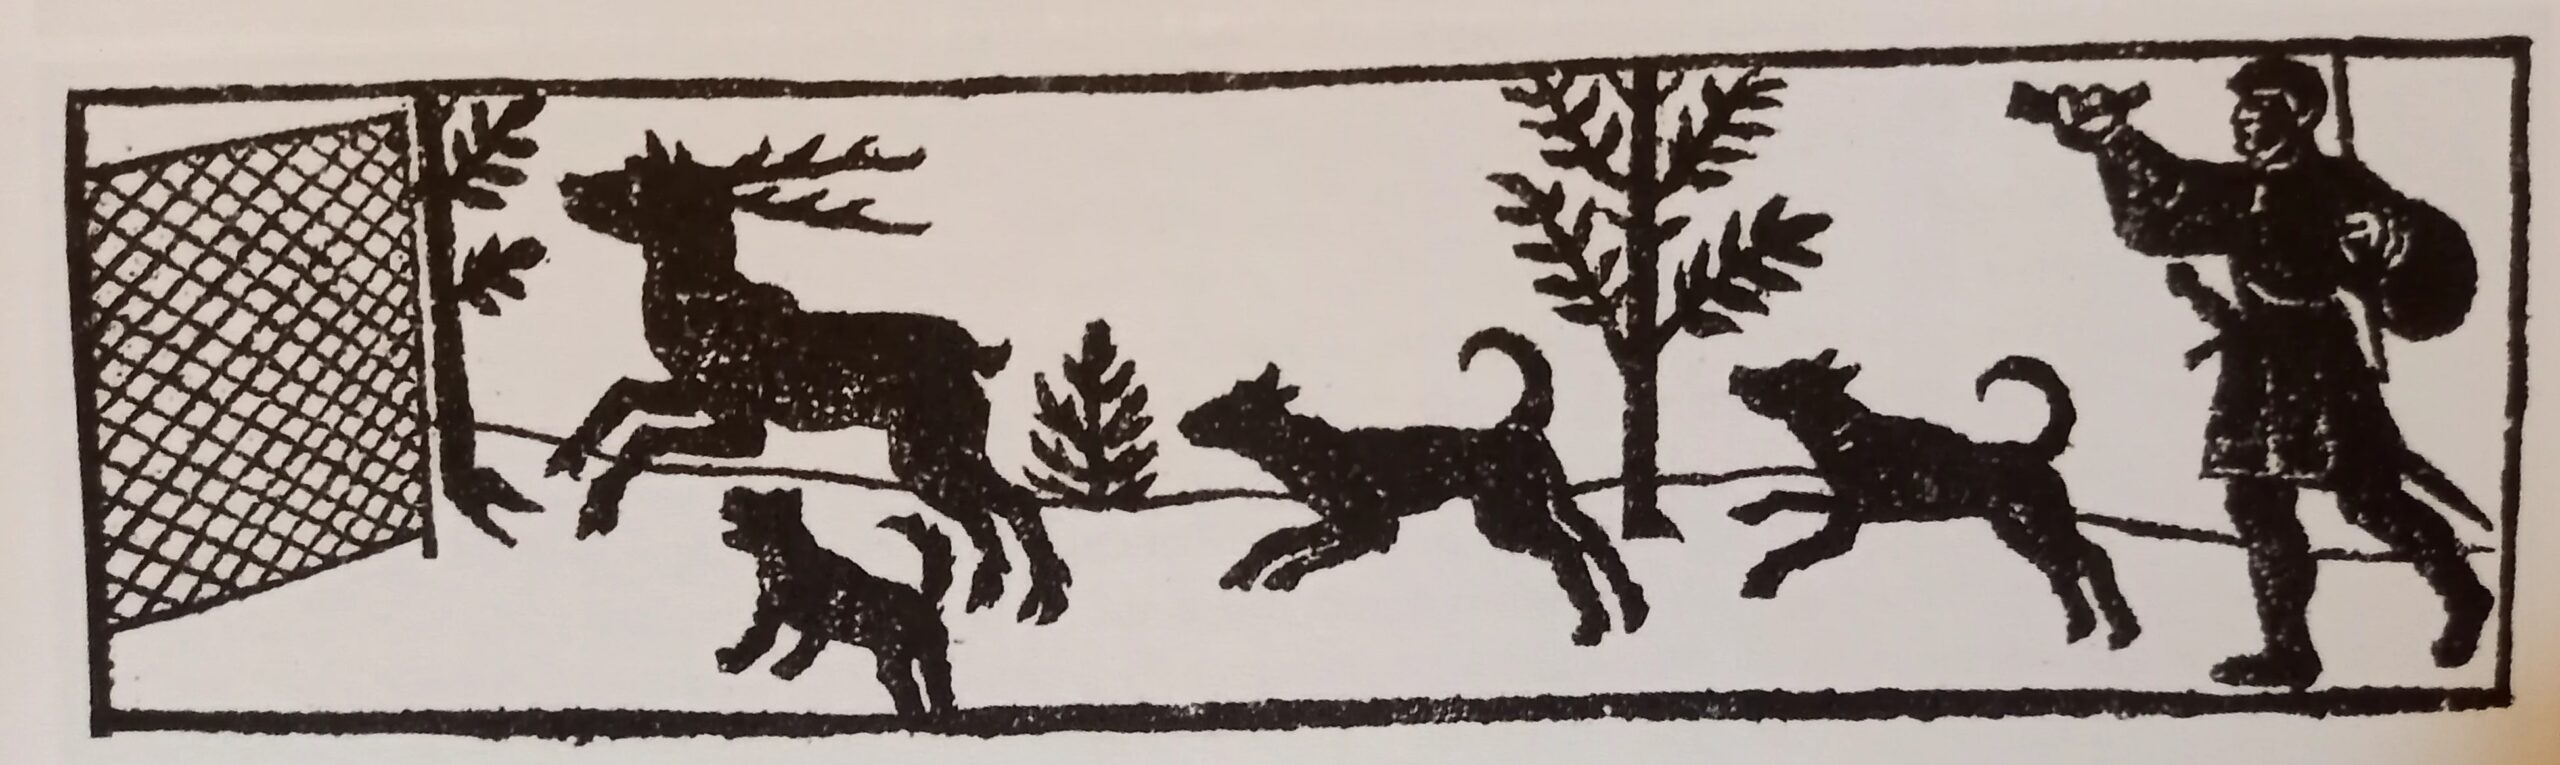 eine einfach gezeichnete Jagdszene im Querformat, links ein Netz, in der Mitte ein Hirsch, der von drei Hunden gejagt wird, rechts ein Jäger mit Jagdhorn